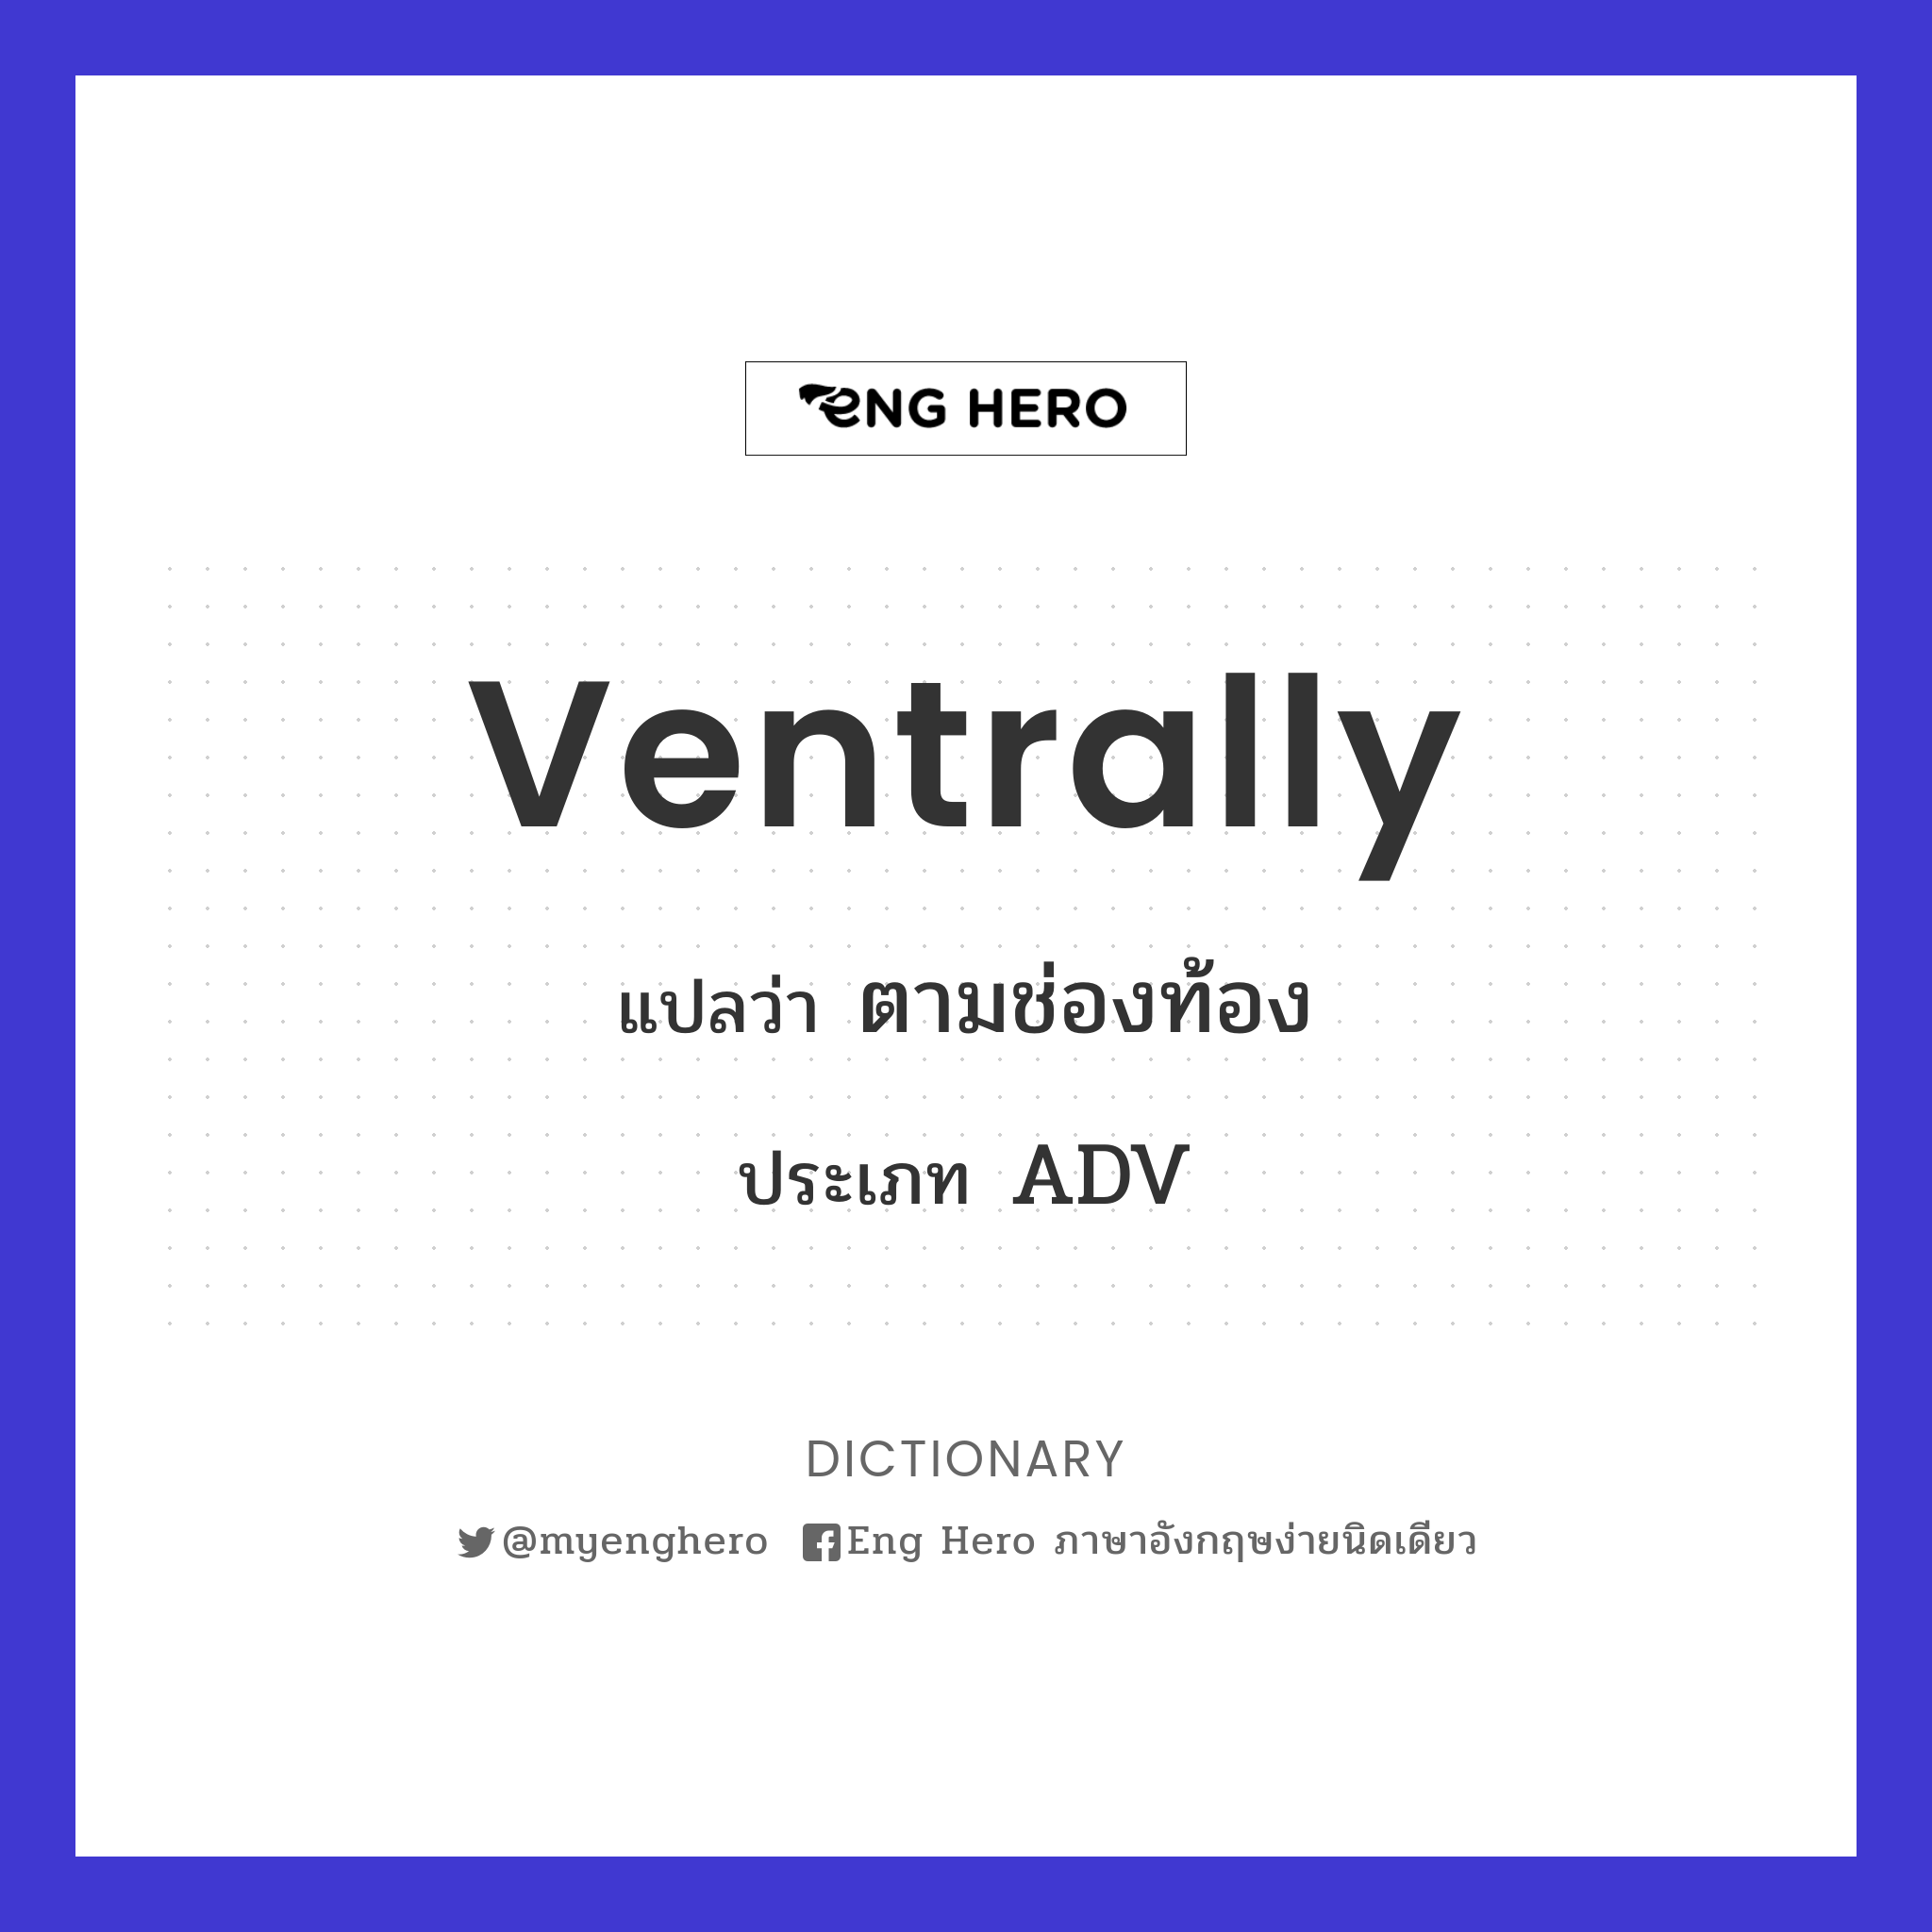 ventrally